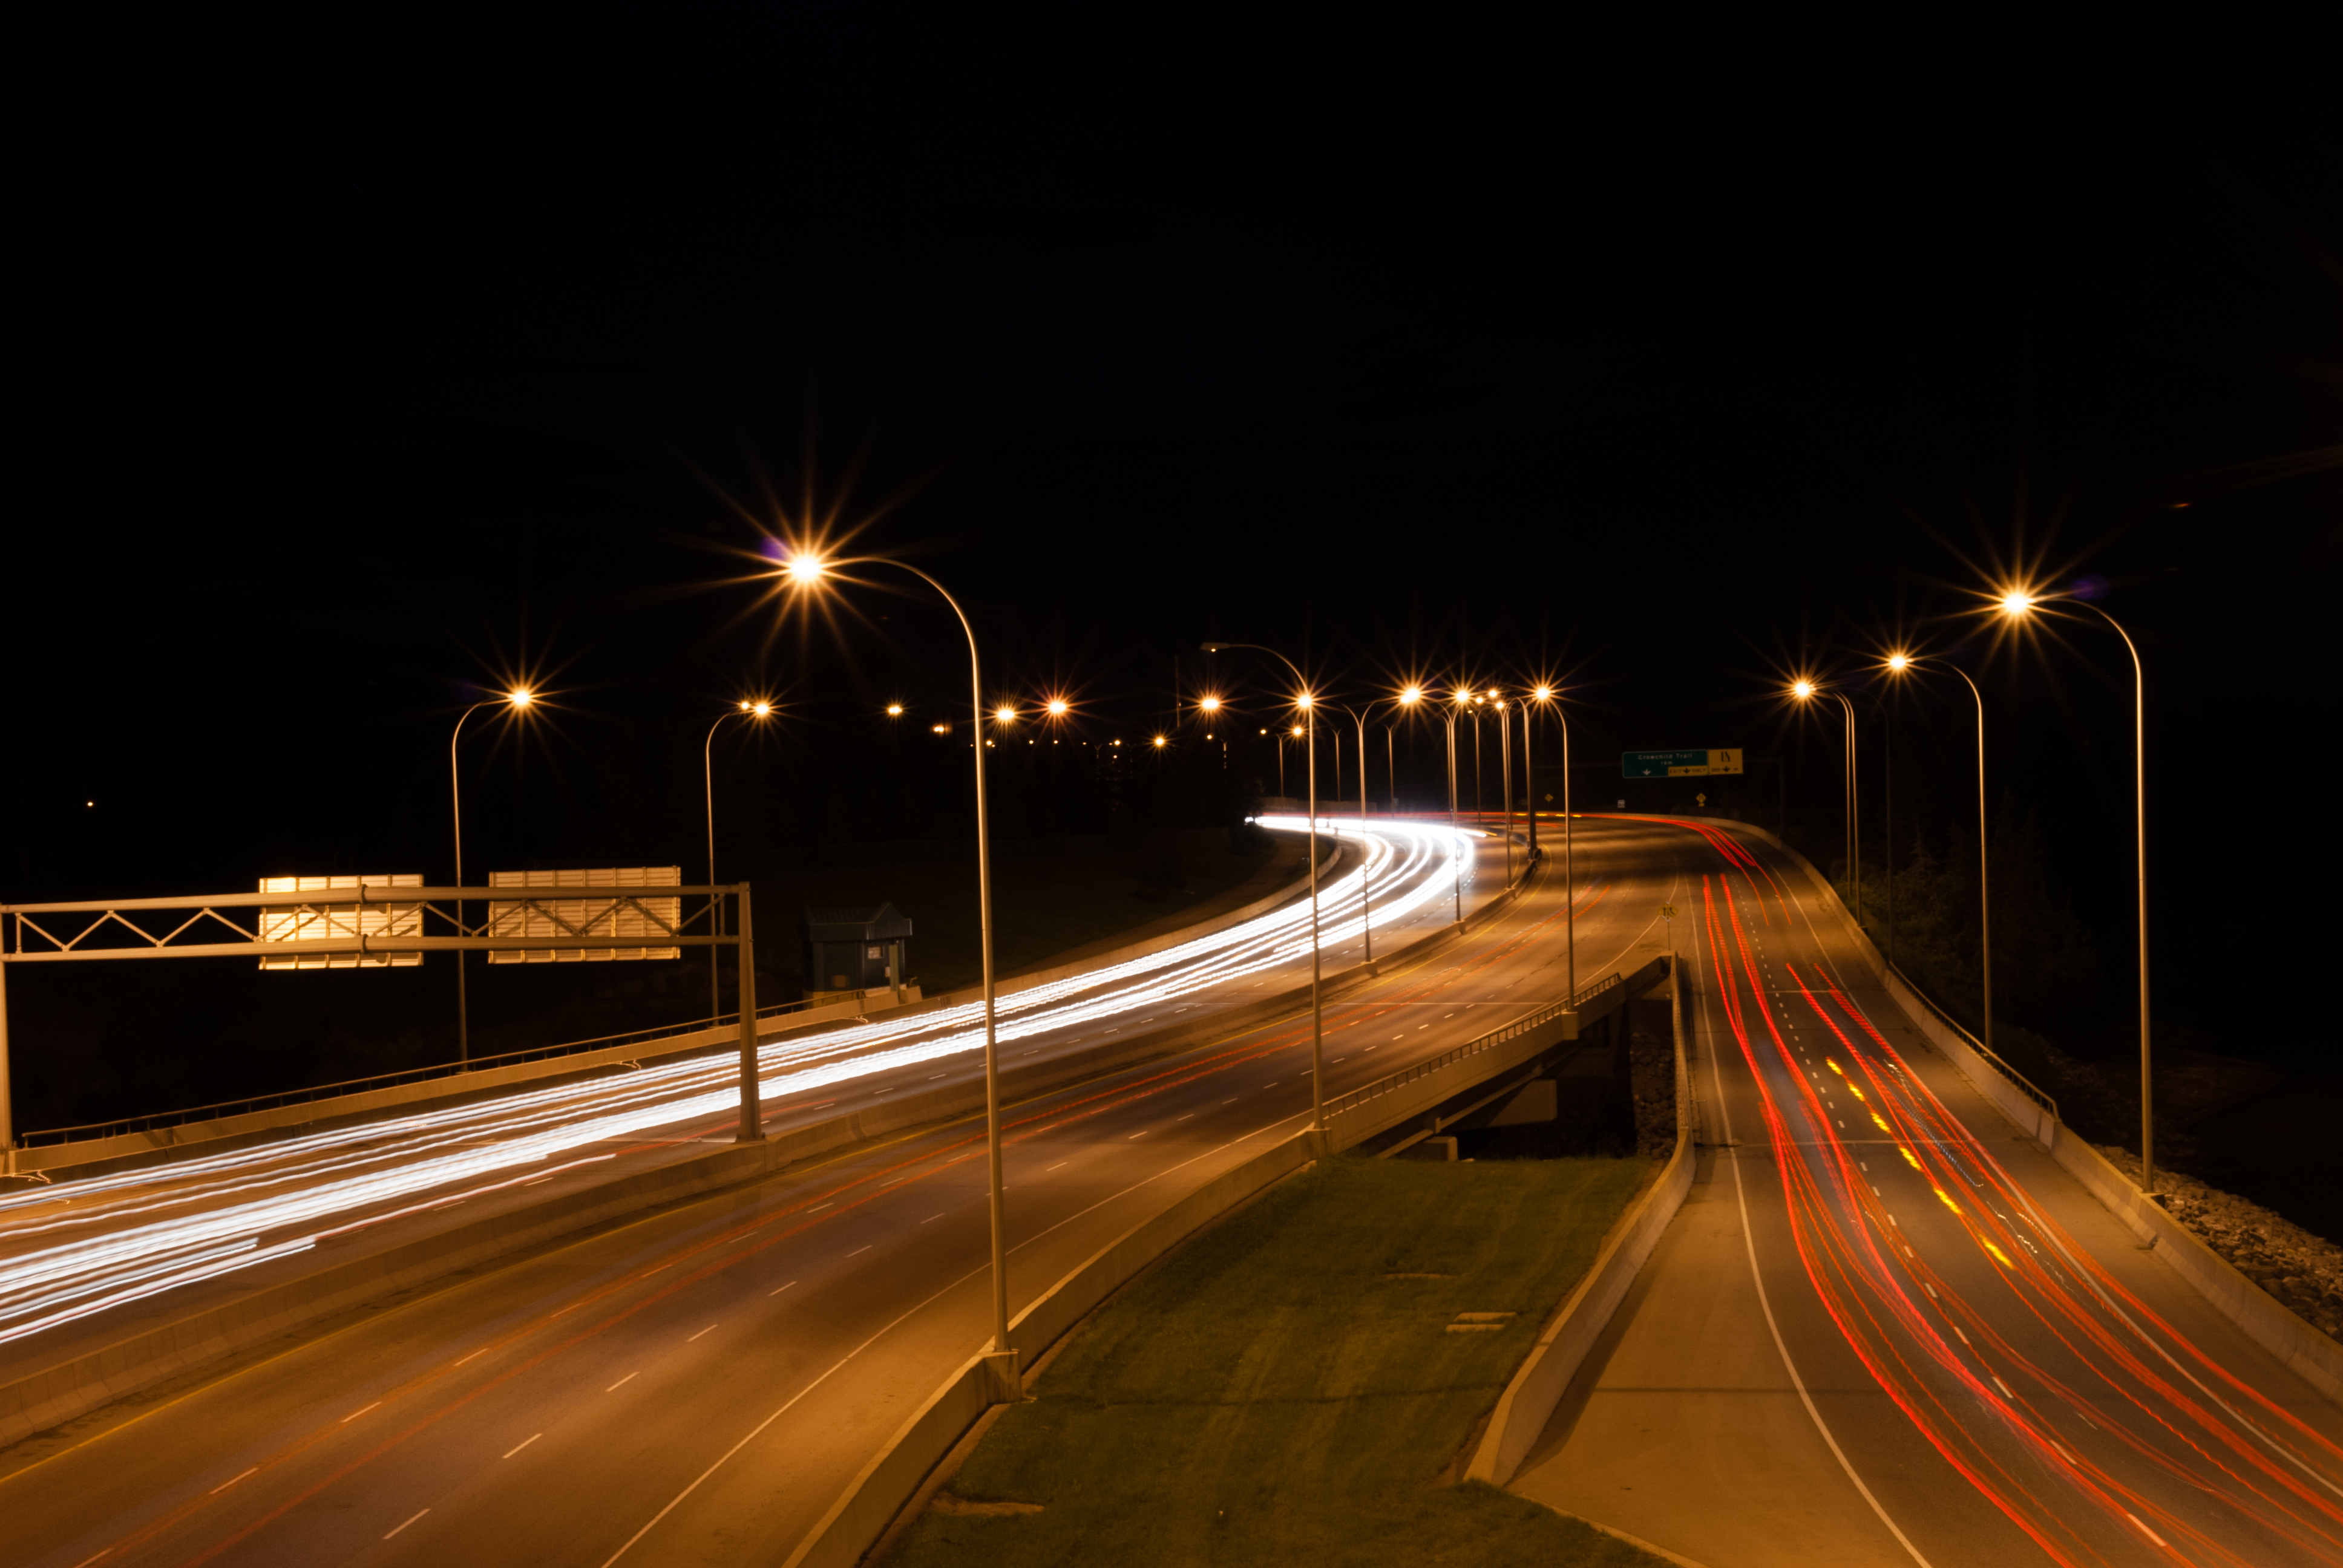 File:Nighttime Traffic - panoramio.jpg - Wikimedia Commons